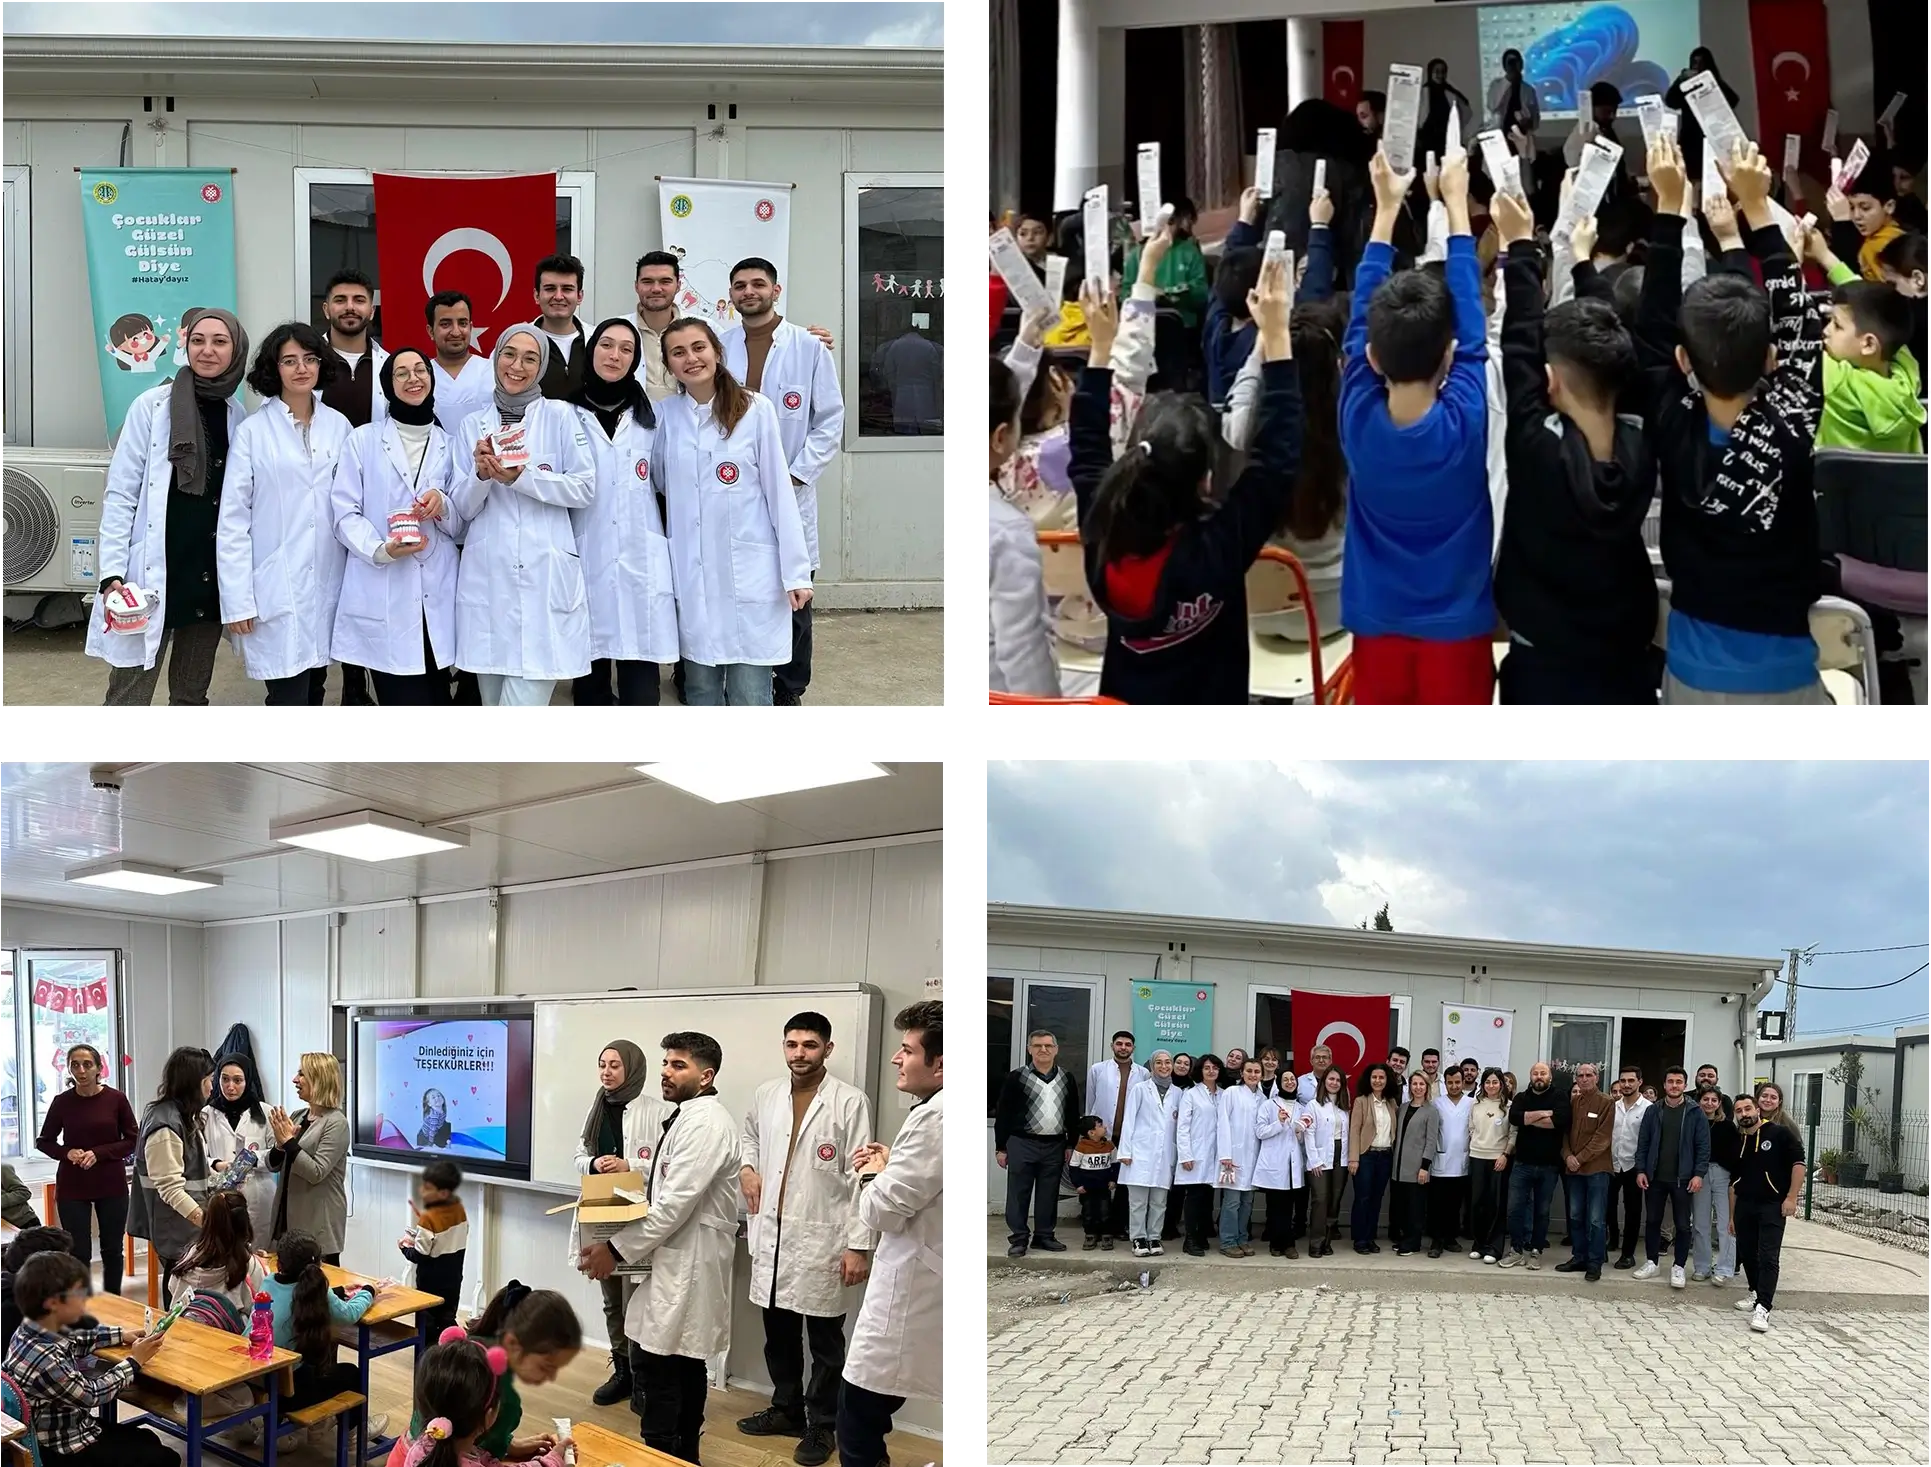 İstanbul üniversitesi Diş Hekimliği Fakültesi ile birlikte “Çocuklar Güzel Gülsün Diye” Hatay’daydık!